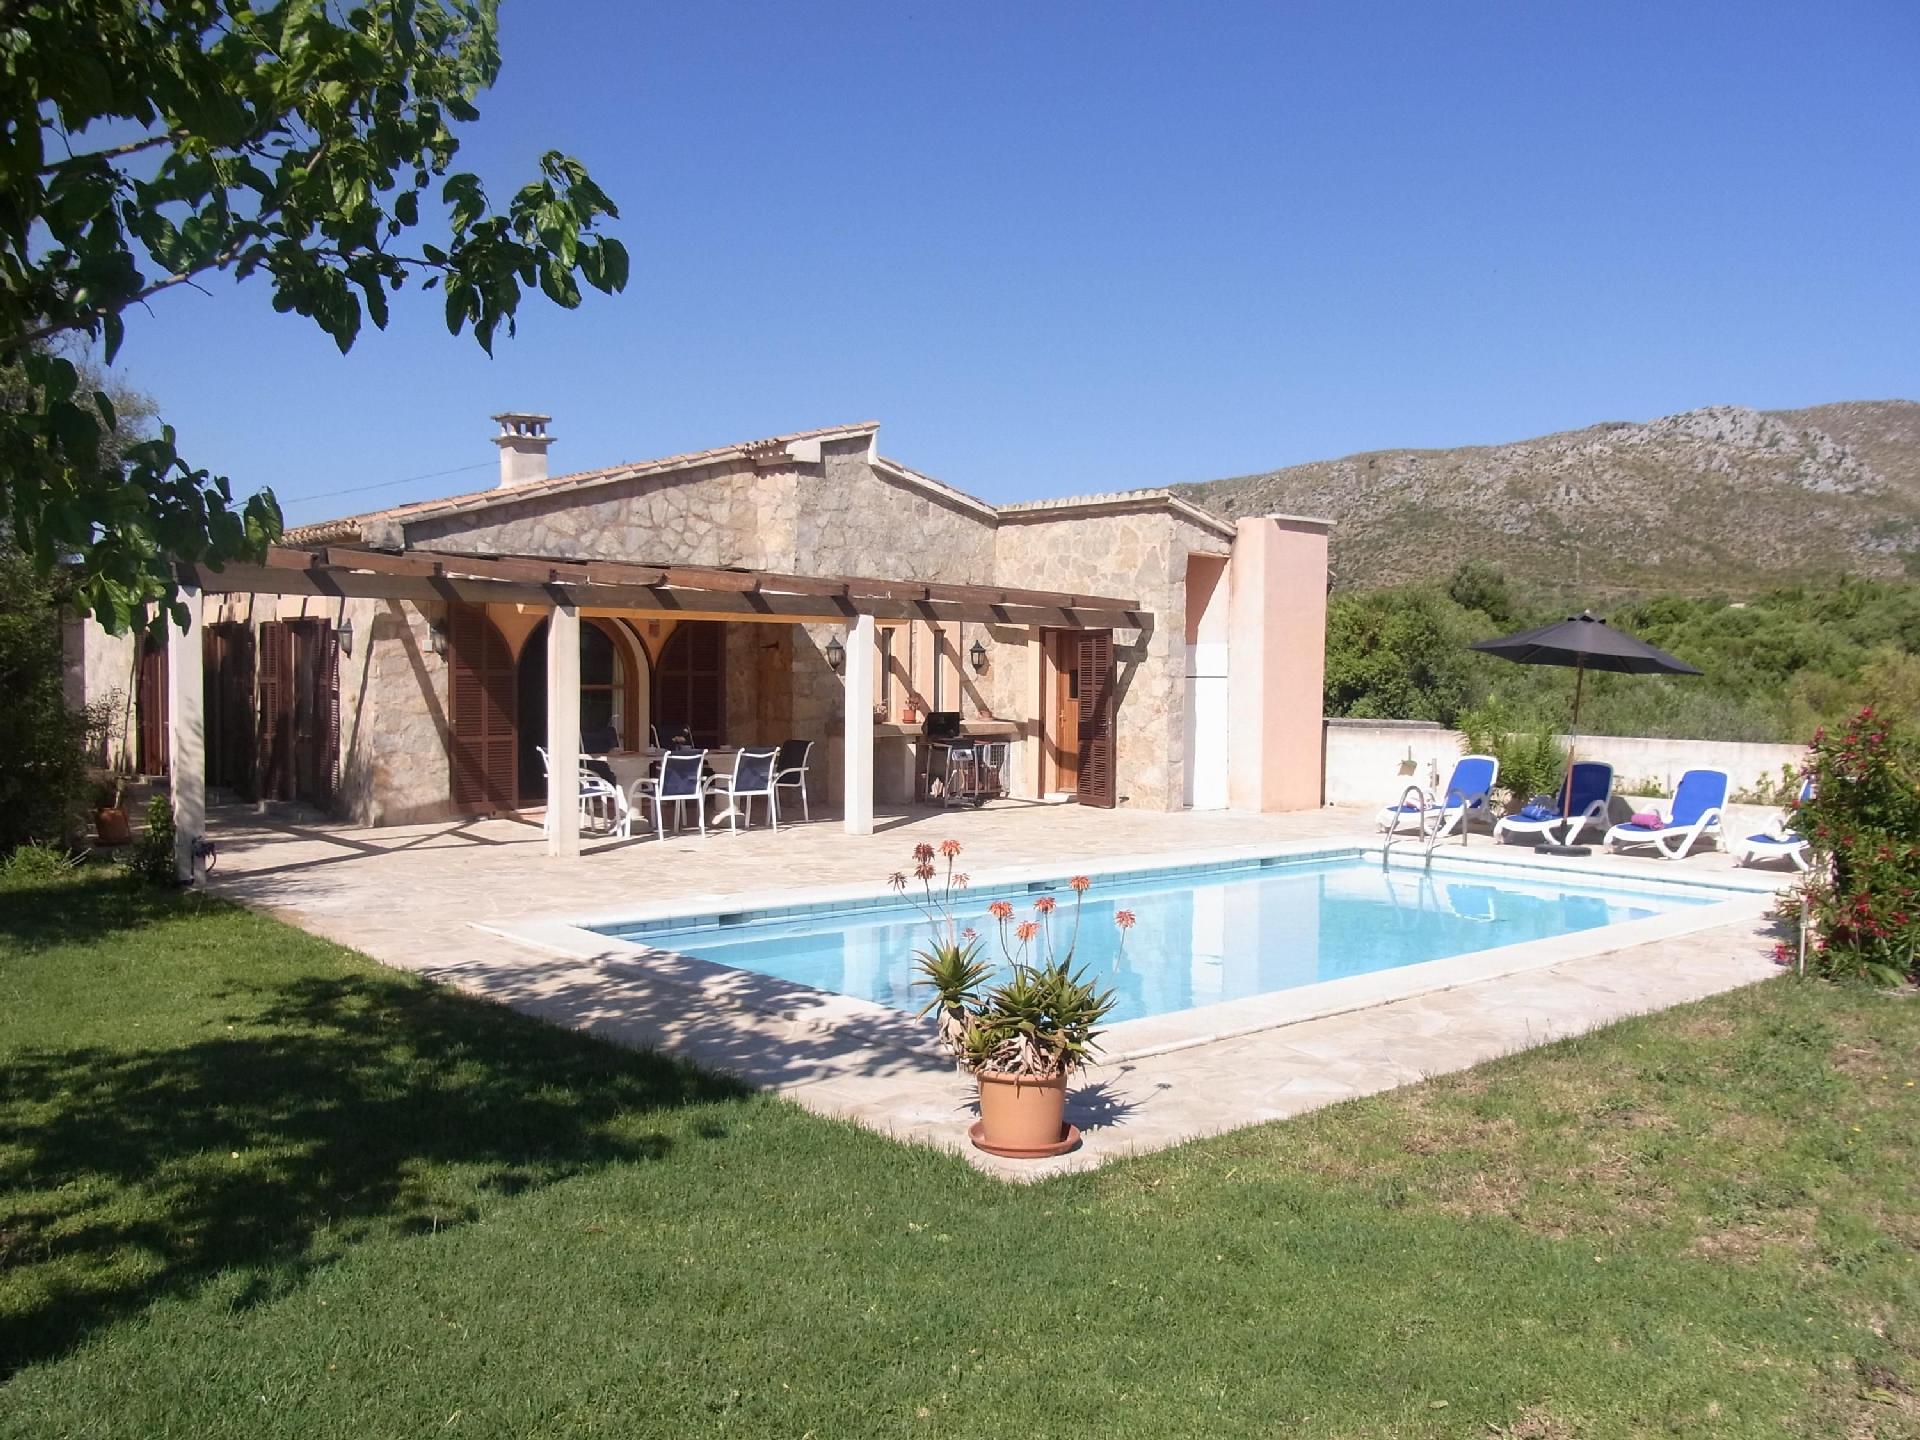 Alleinstehende Finca mit Pool, komfortabler Einric Ferienhaus in Spanien